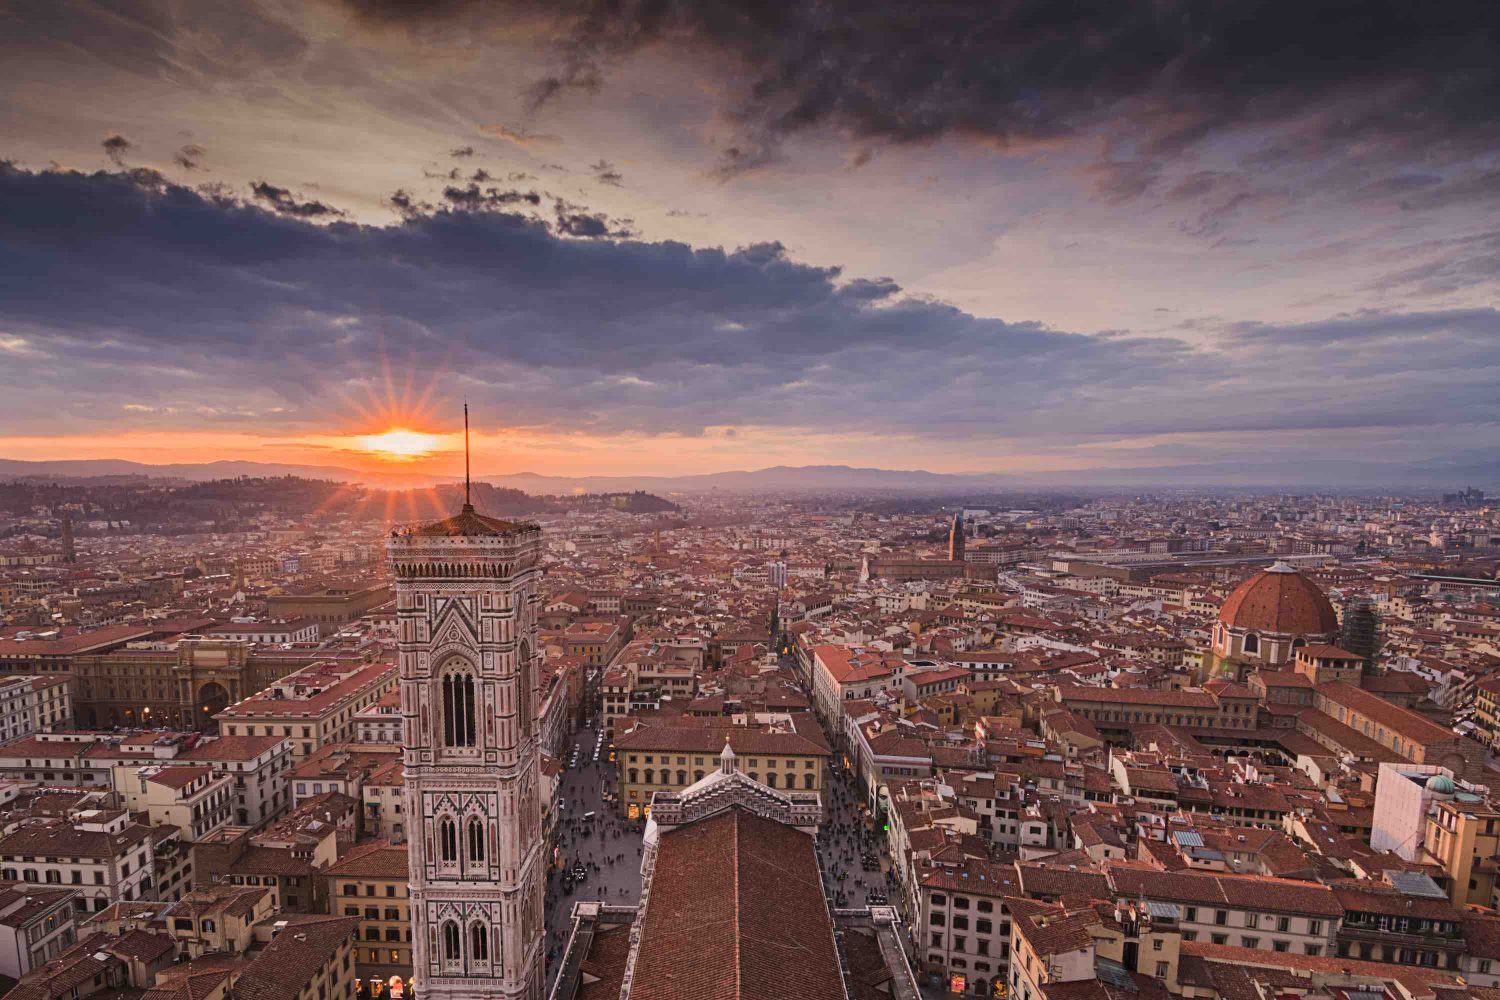 Italy Travels tour operator fiorentino, tramite Tickets Florence vi trasporta indietro nel tempo con un tour degli Uffizi davvero mozzafiato